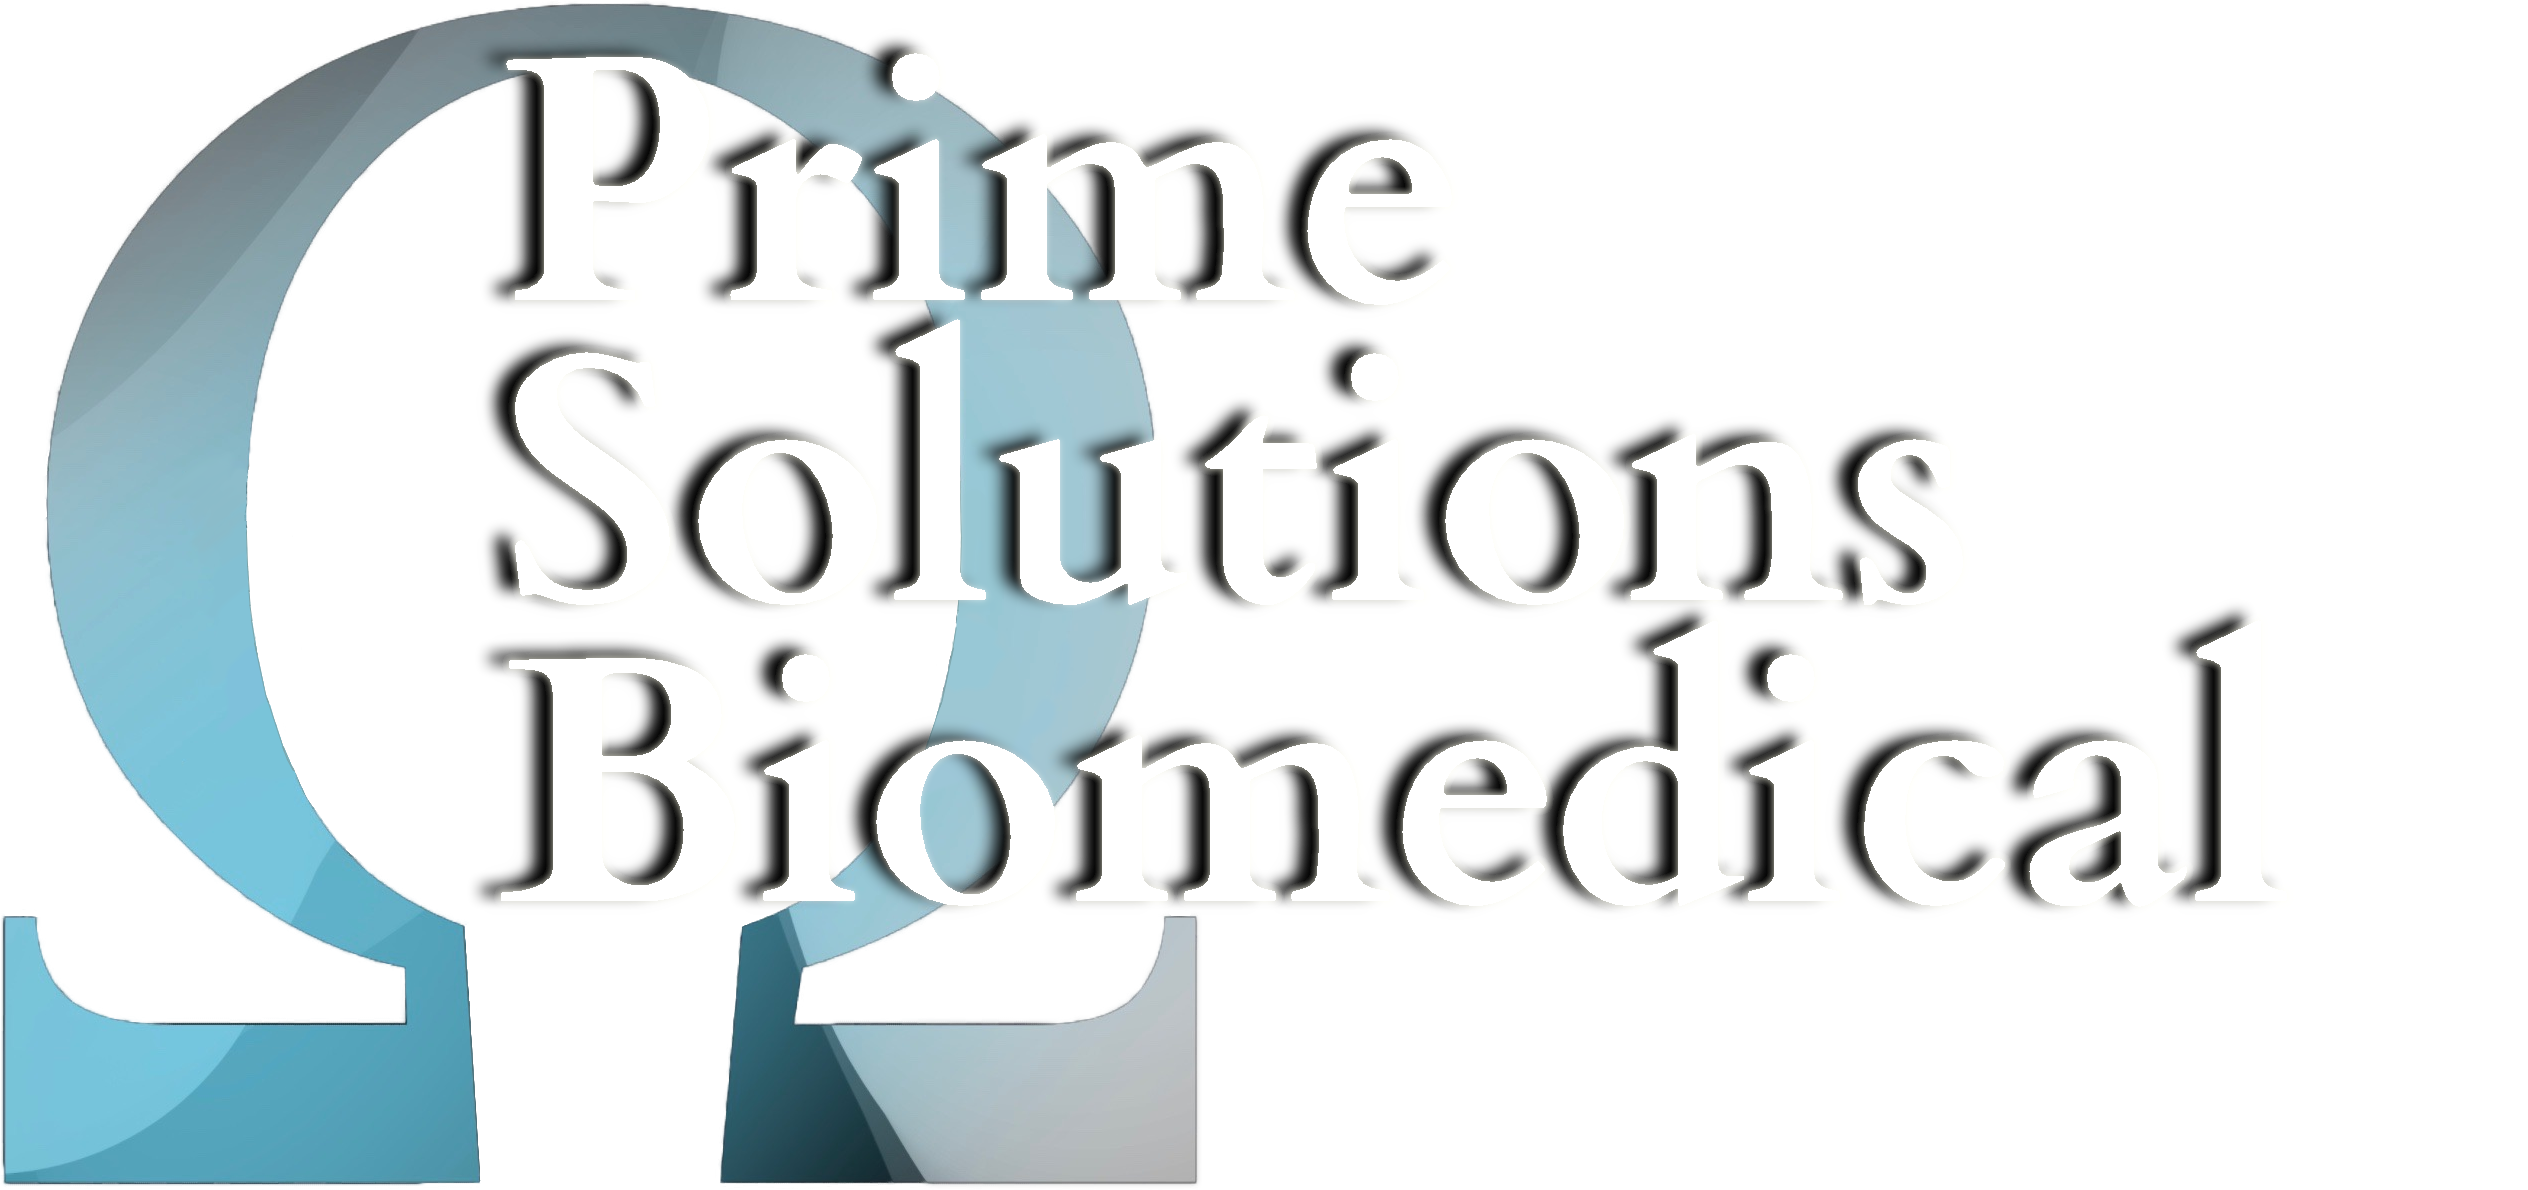 Prime Solutions Biomedical